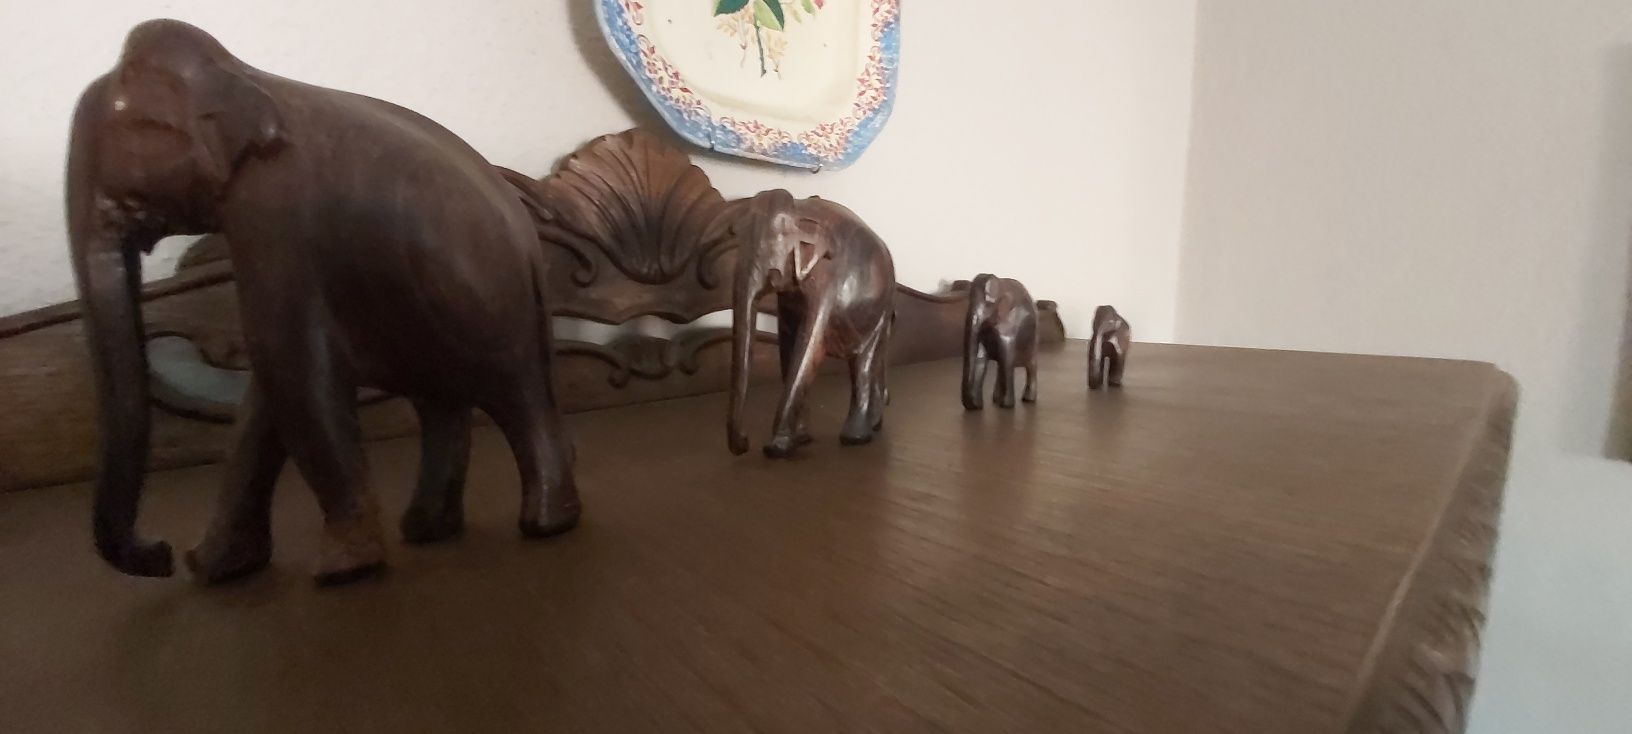 5 estátuas de elefantes